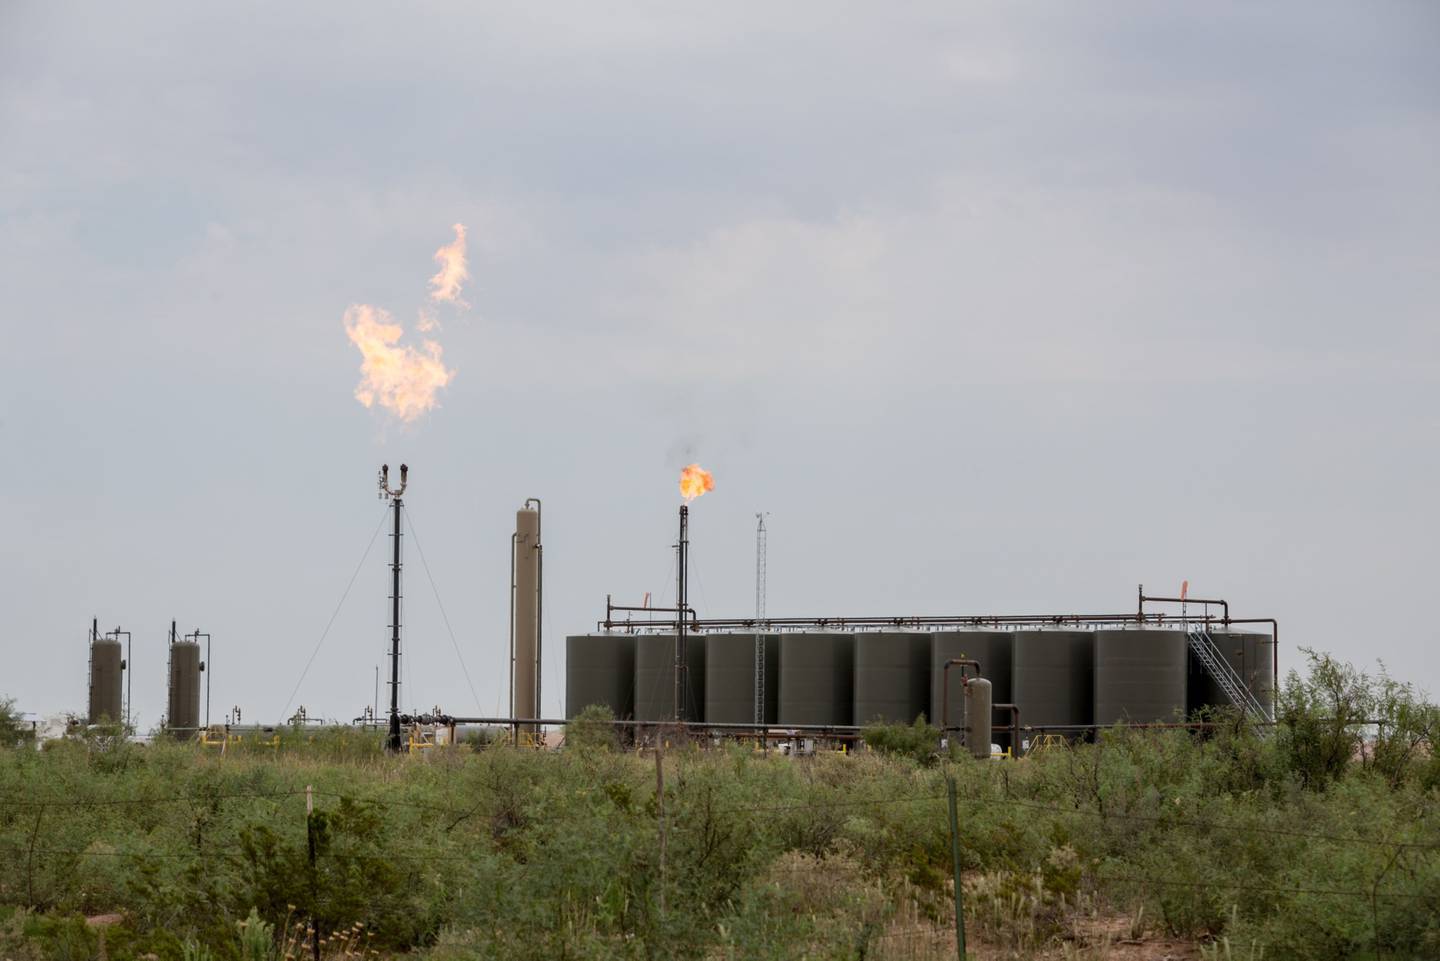 El gas metano se quema justo al lado de la Ruta 285 de Estados Unidos, cerca de Carlsbad, Nuevo México, Estados Unidos, el martes 6 de agosto de 2019.